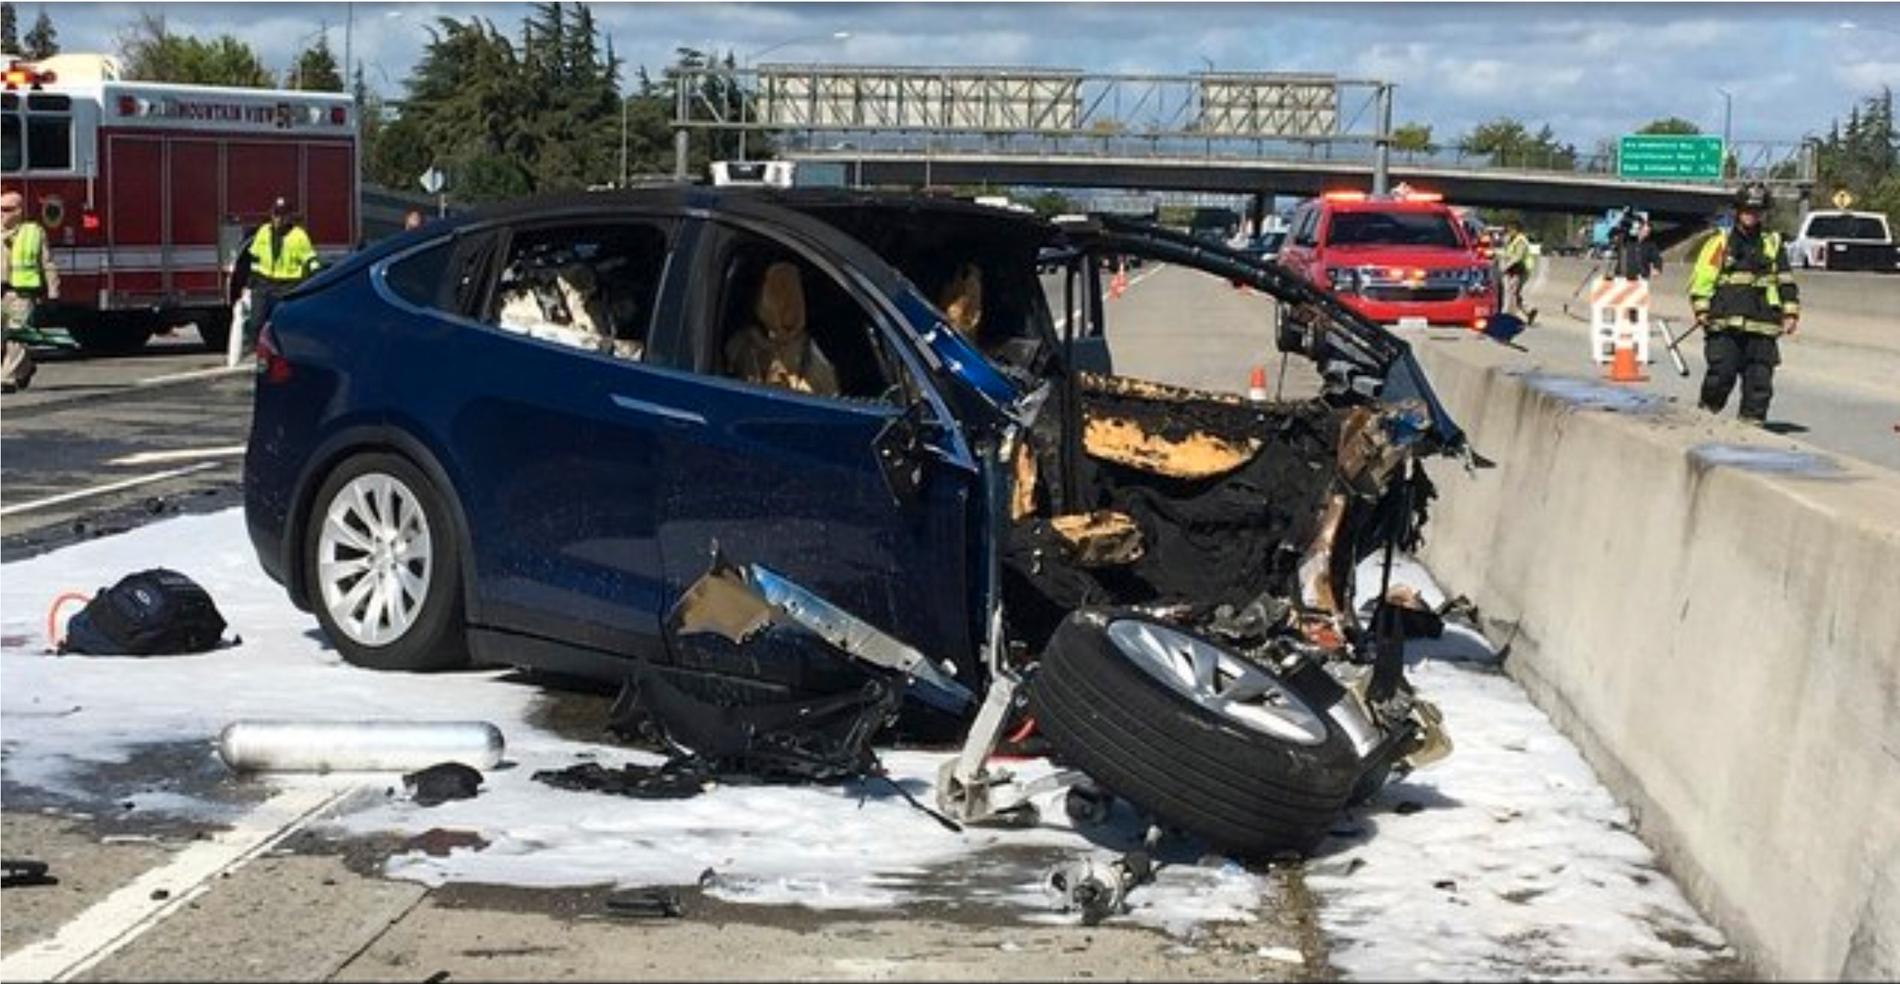 Teslan, en SUV, fattade eld efter kraschen. Myndigheterna utreder nu vilken roll bilens autopilotsystem hade i olyckan.